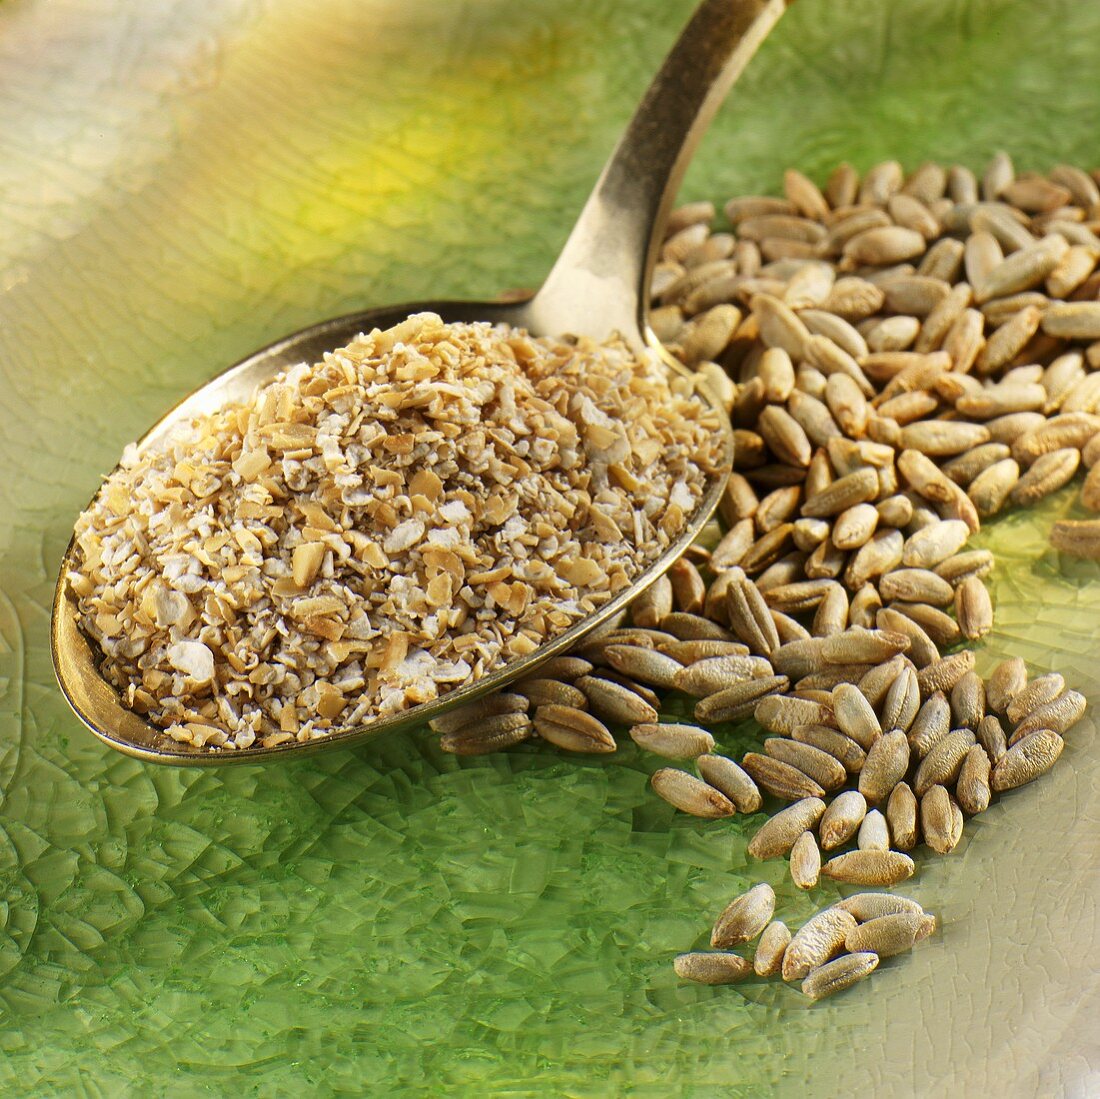 Wheat bran on spoon, grains of rye